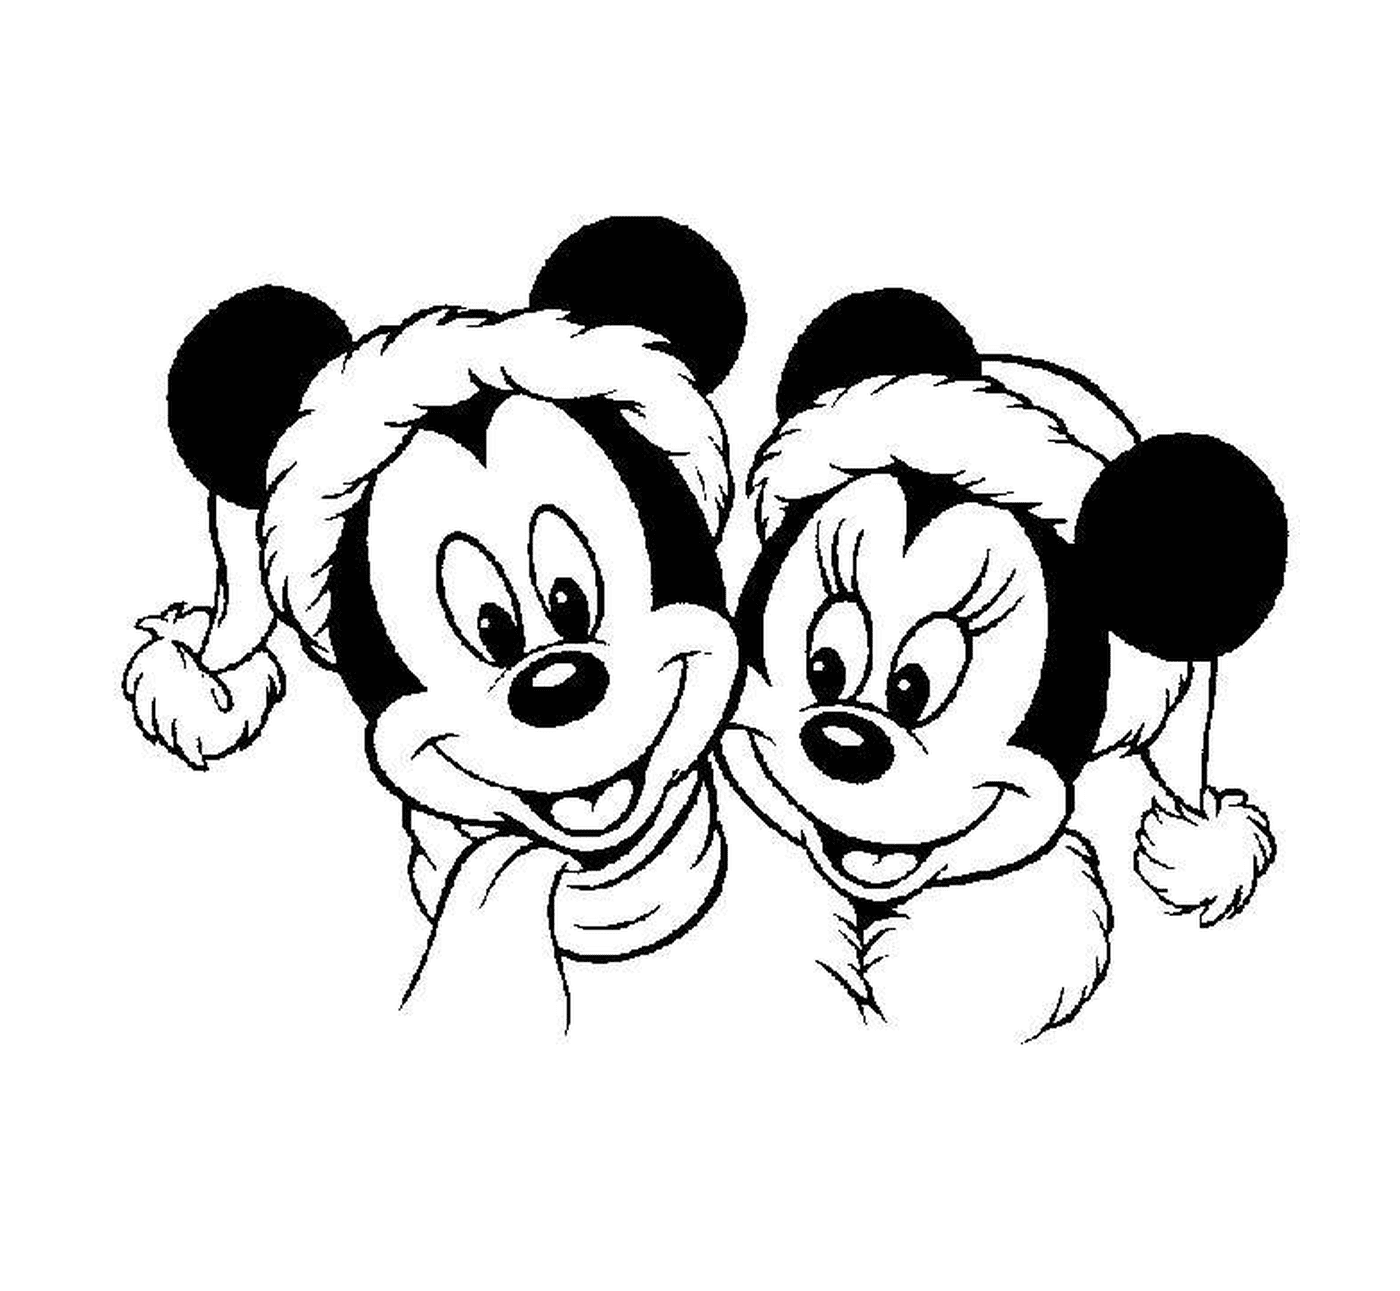  Mickey und Minnie lächelnd 